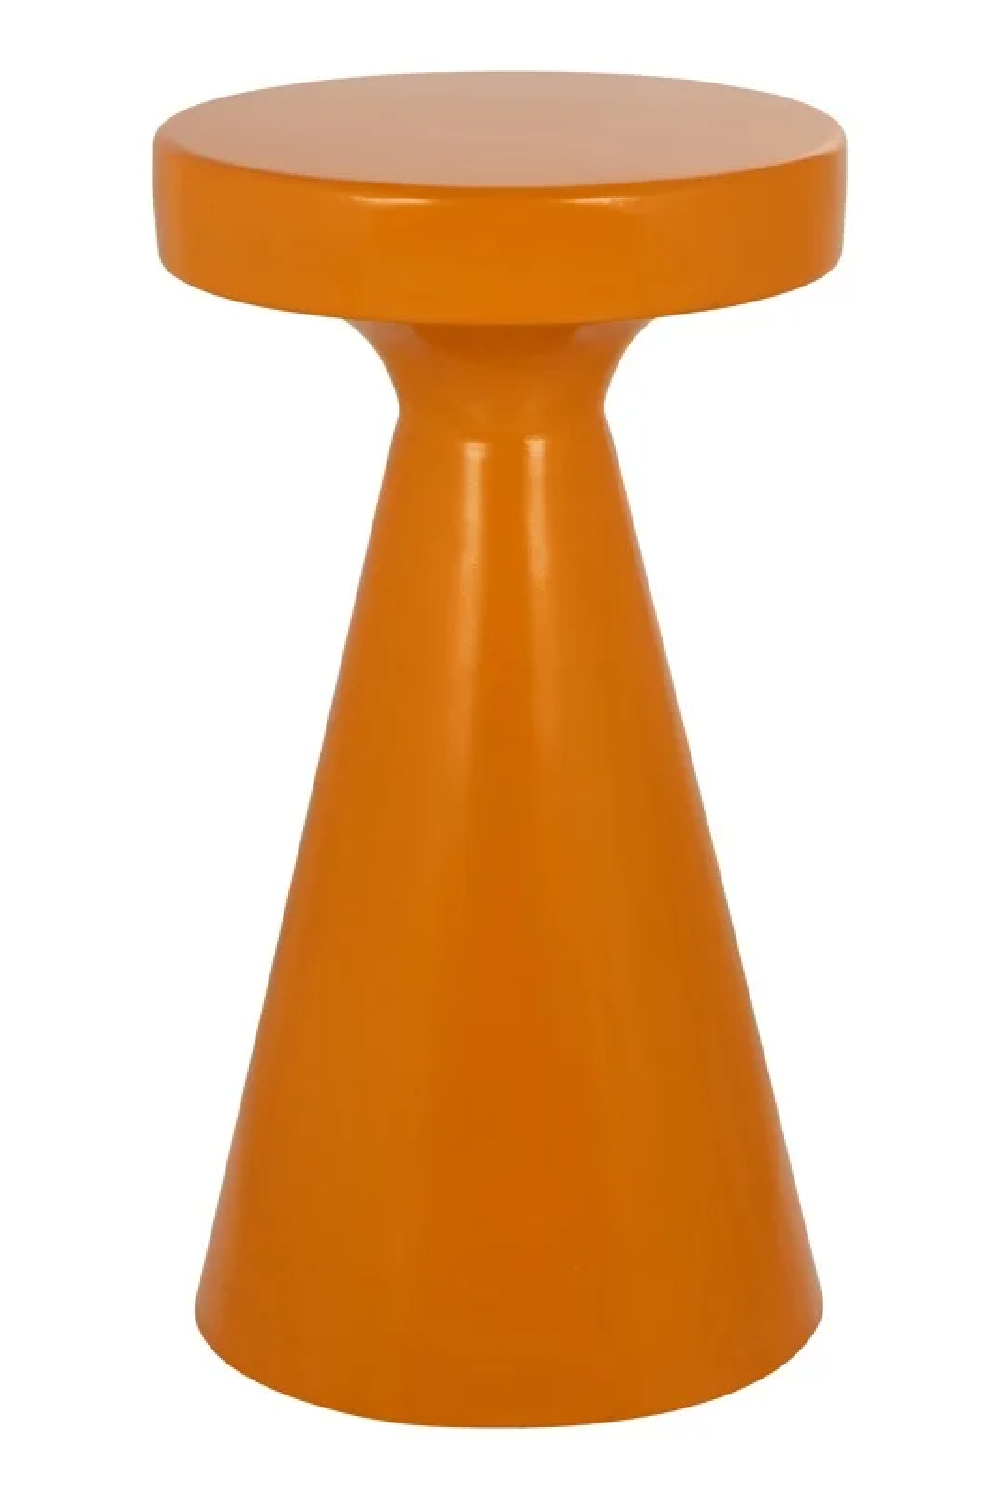 Orange Modern Side Table | OROA Kimble | Oroa.com